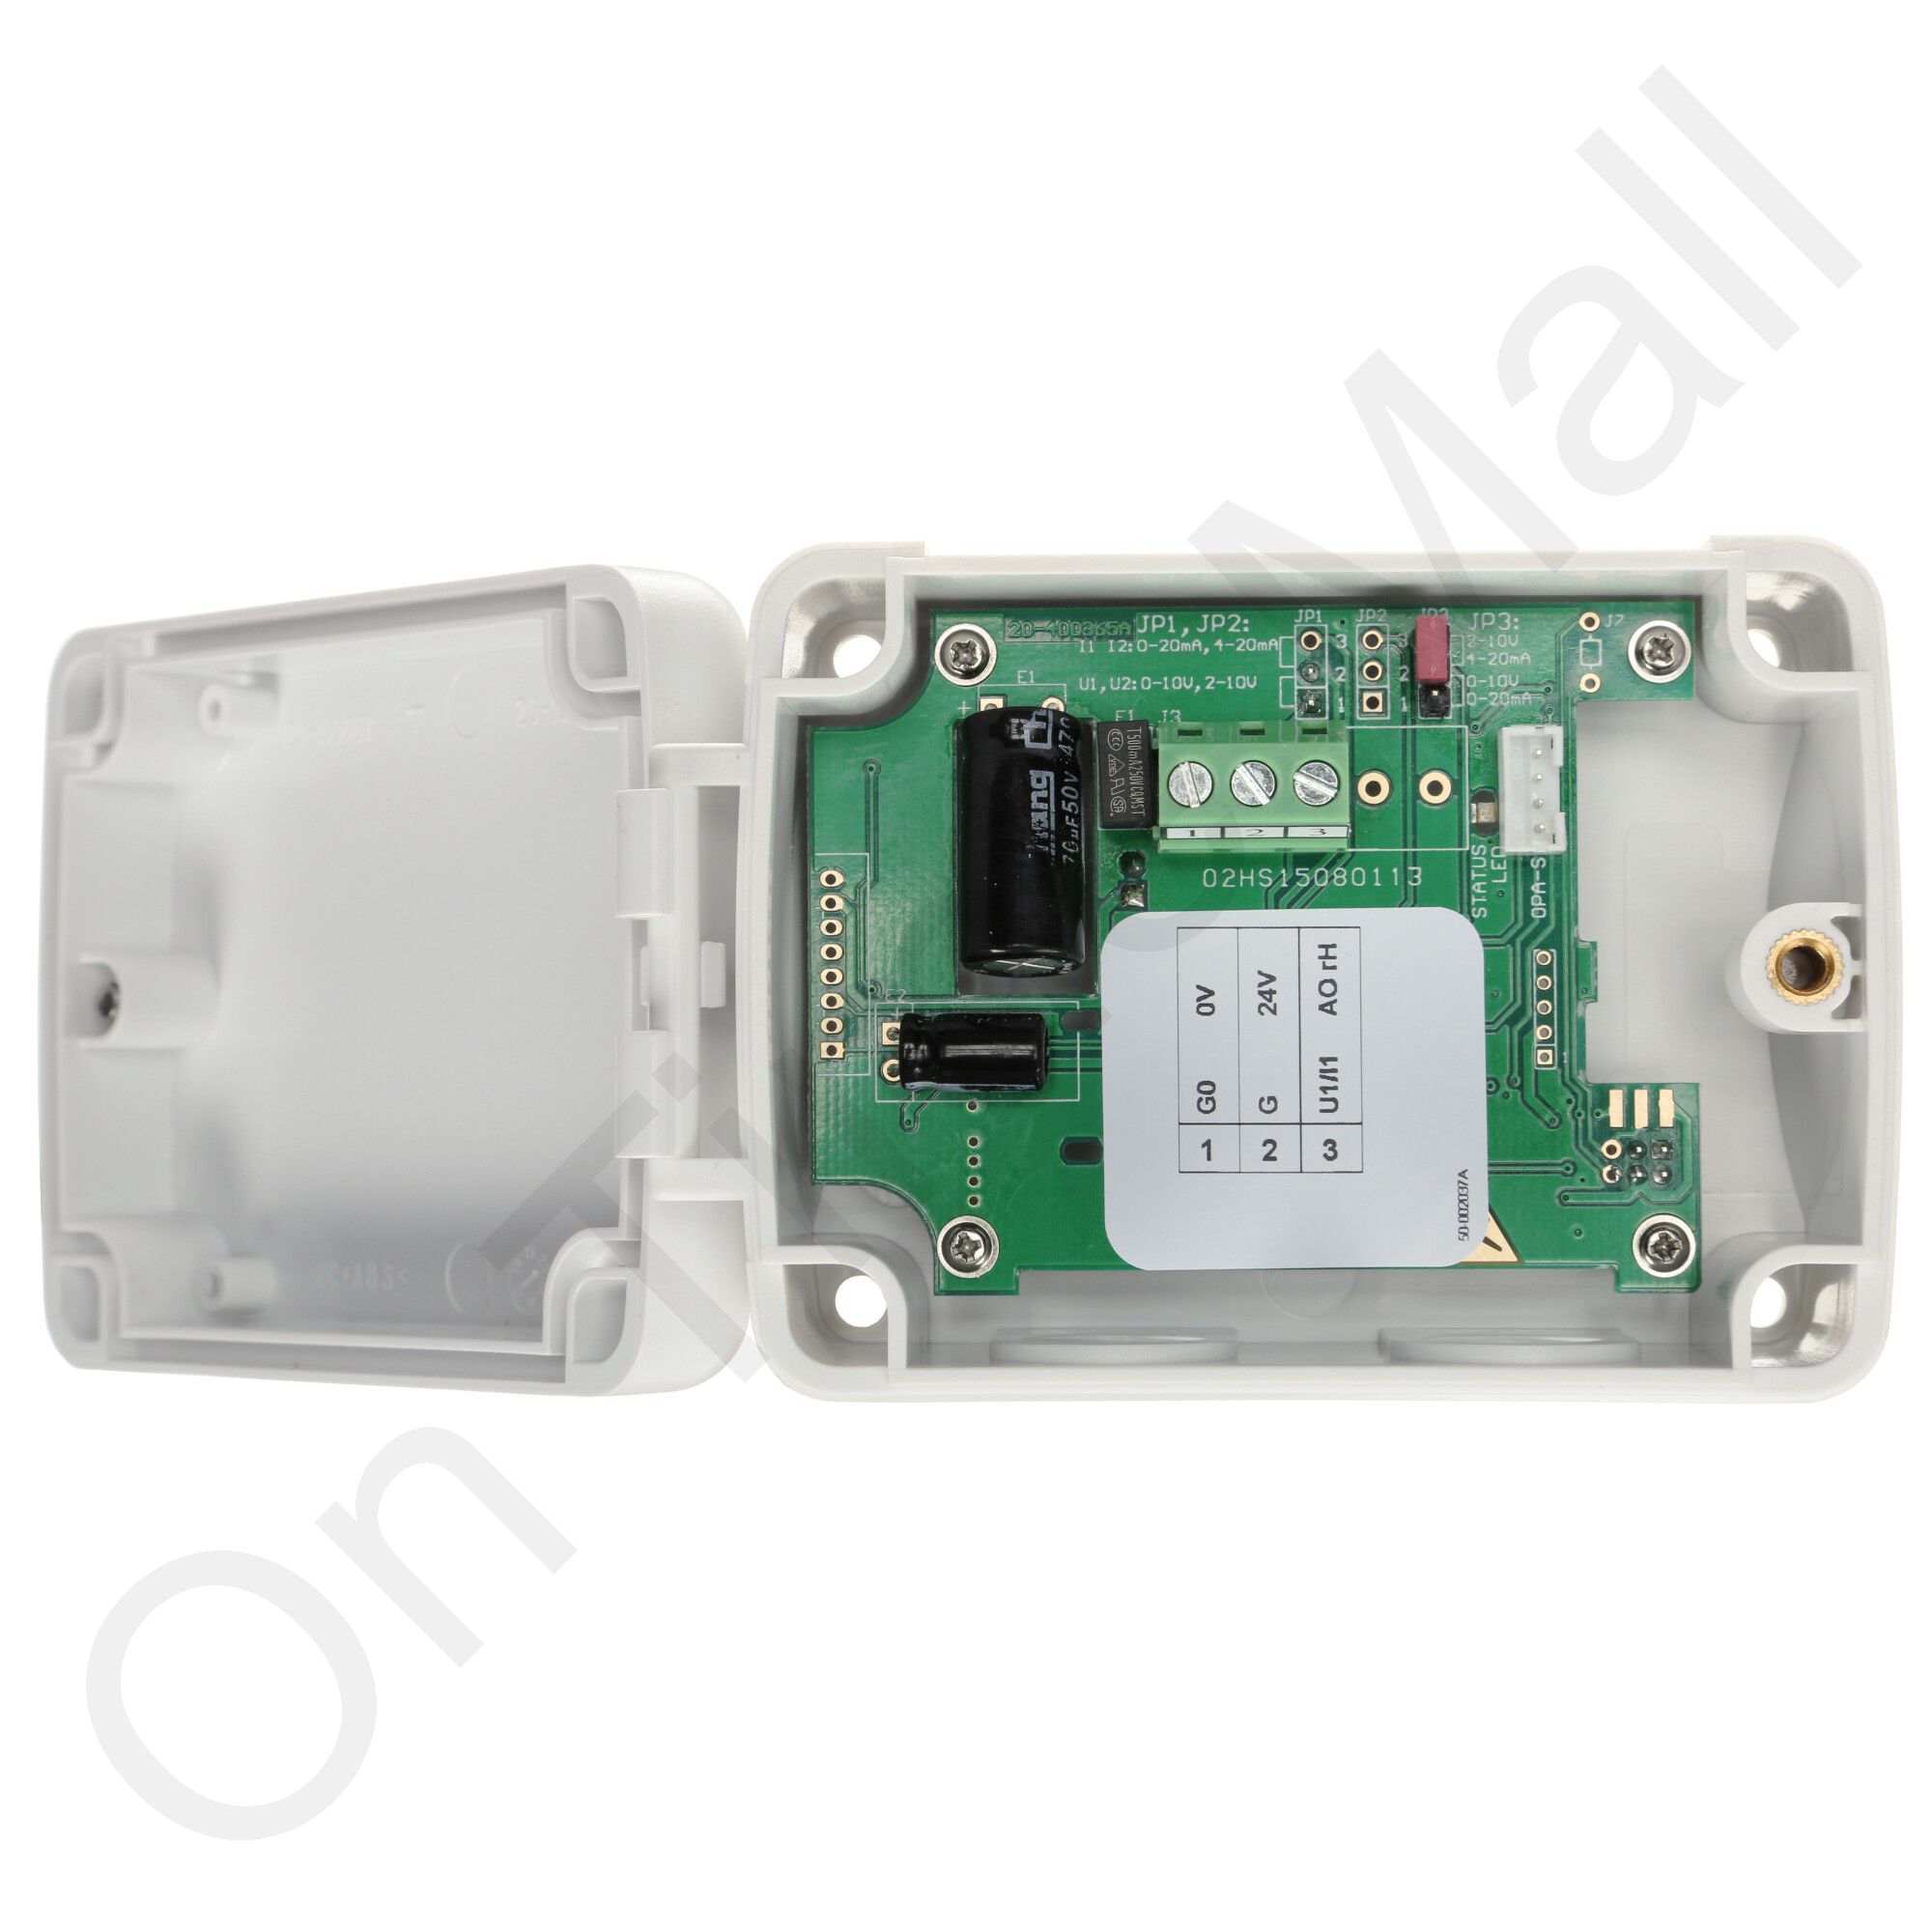 Nortec 252-0261 Control 0-10V Dig Humidistat W/O Sensor